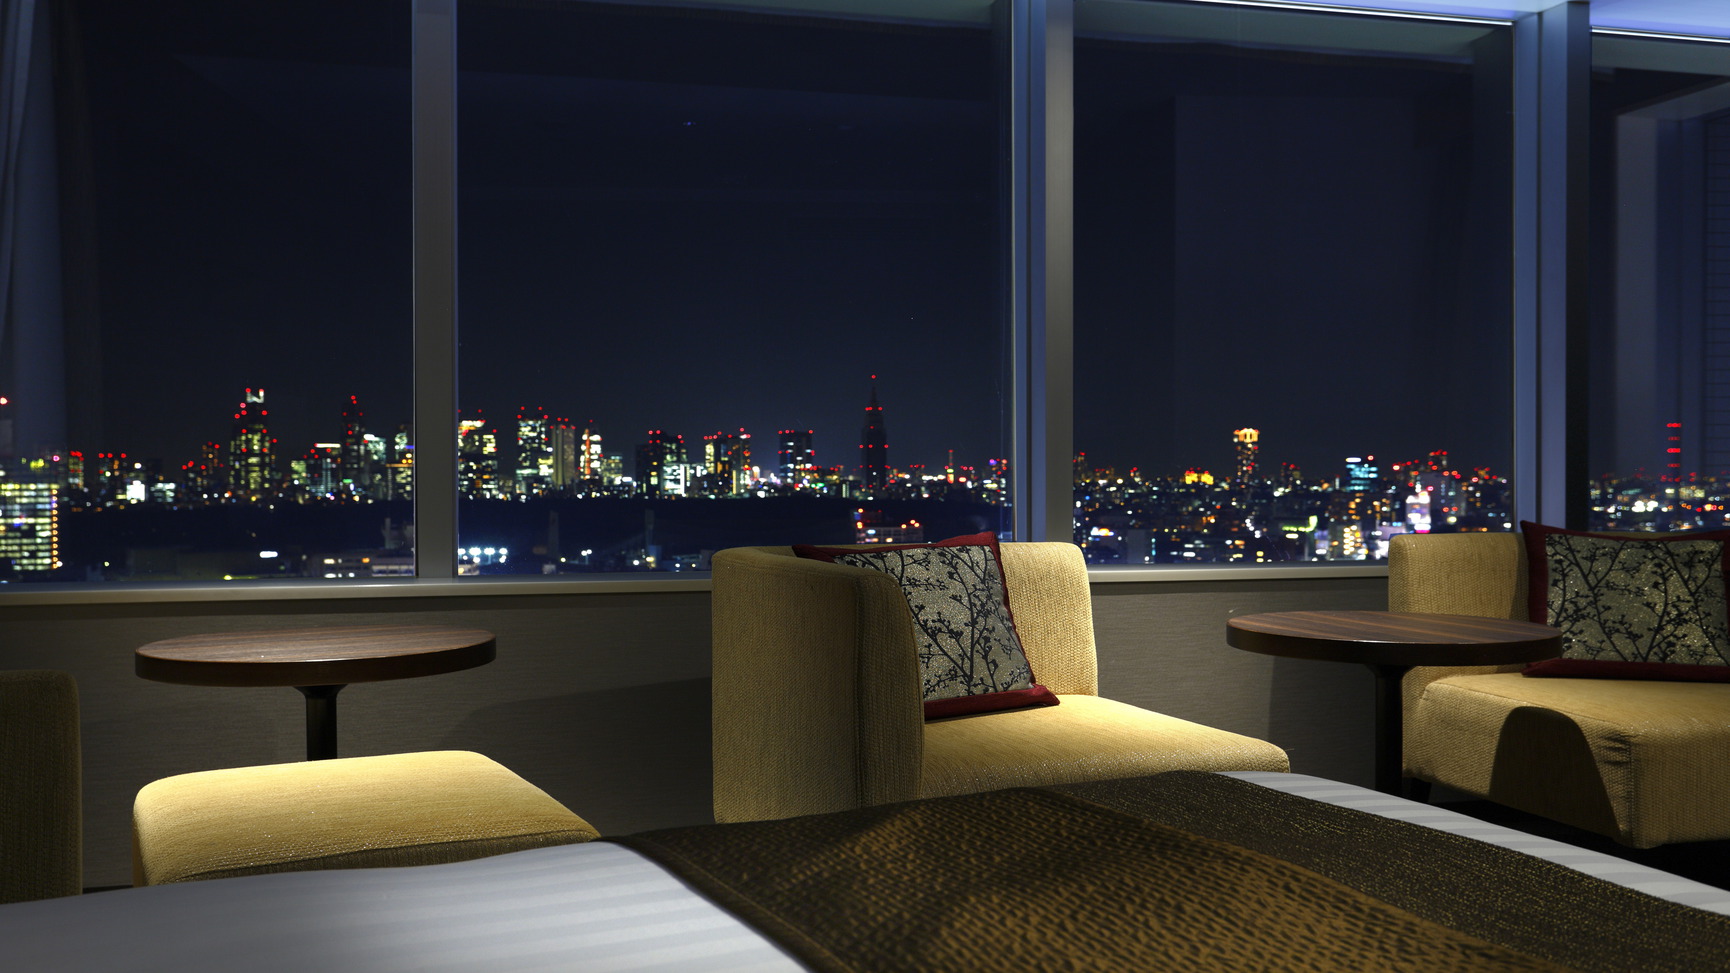 エクセルコーナーツインから新宿側の夜景を眺める